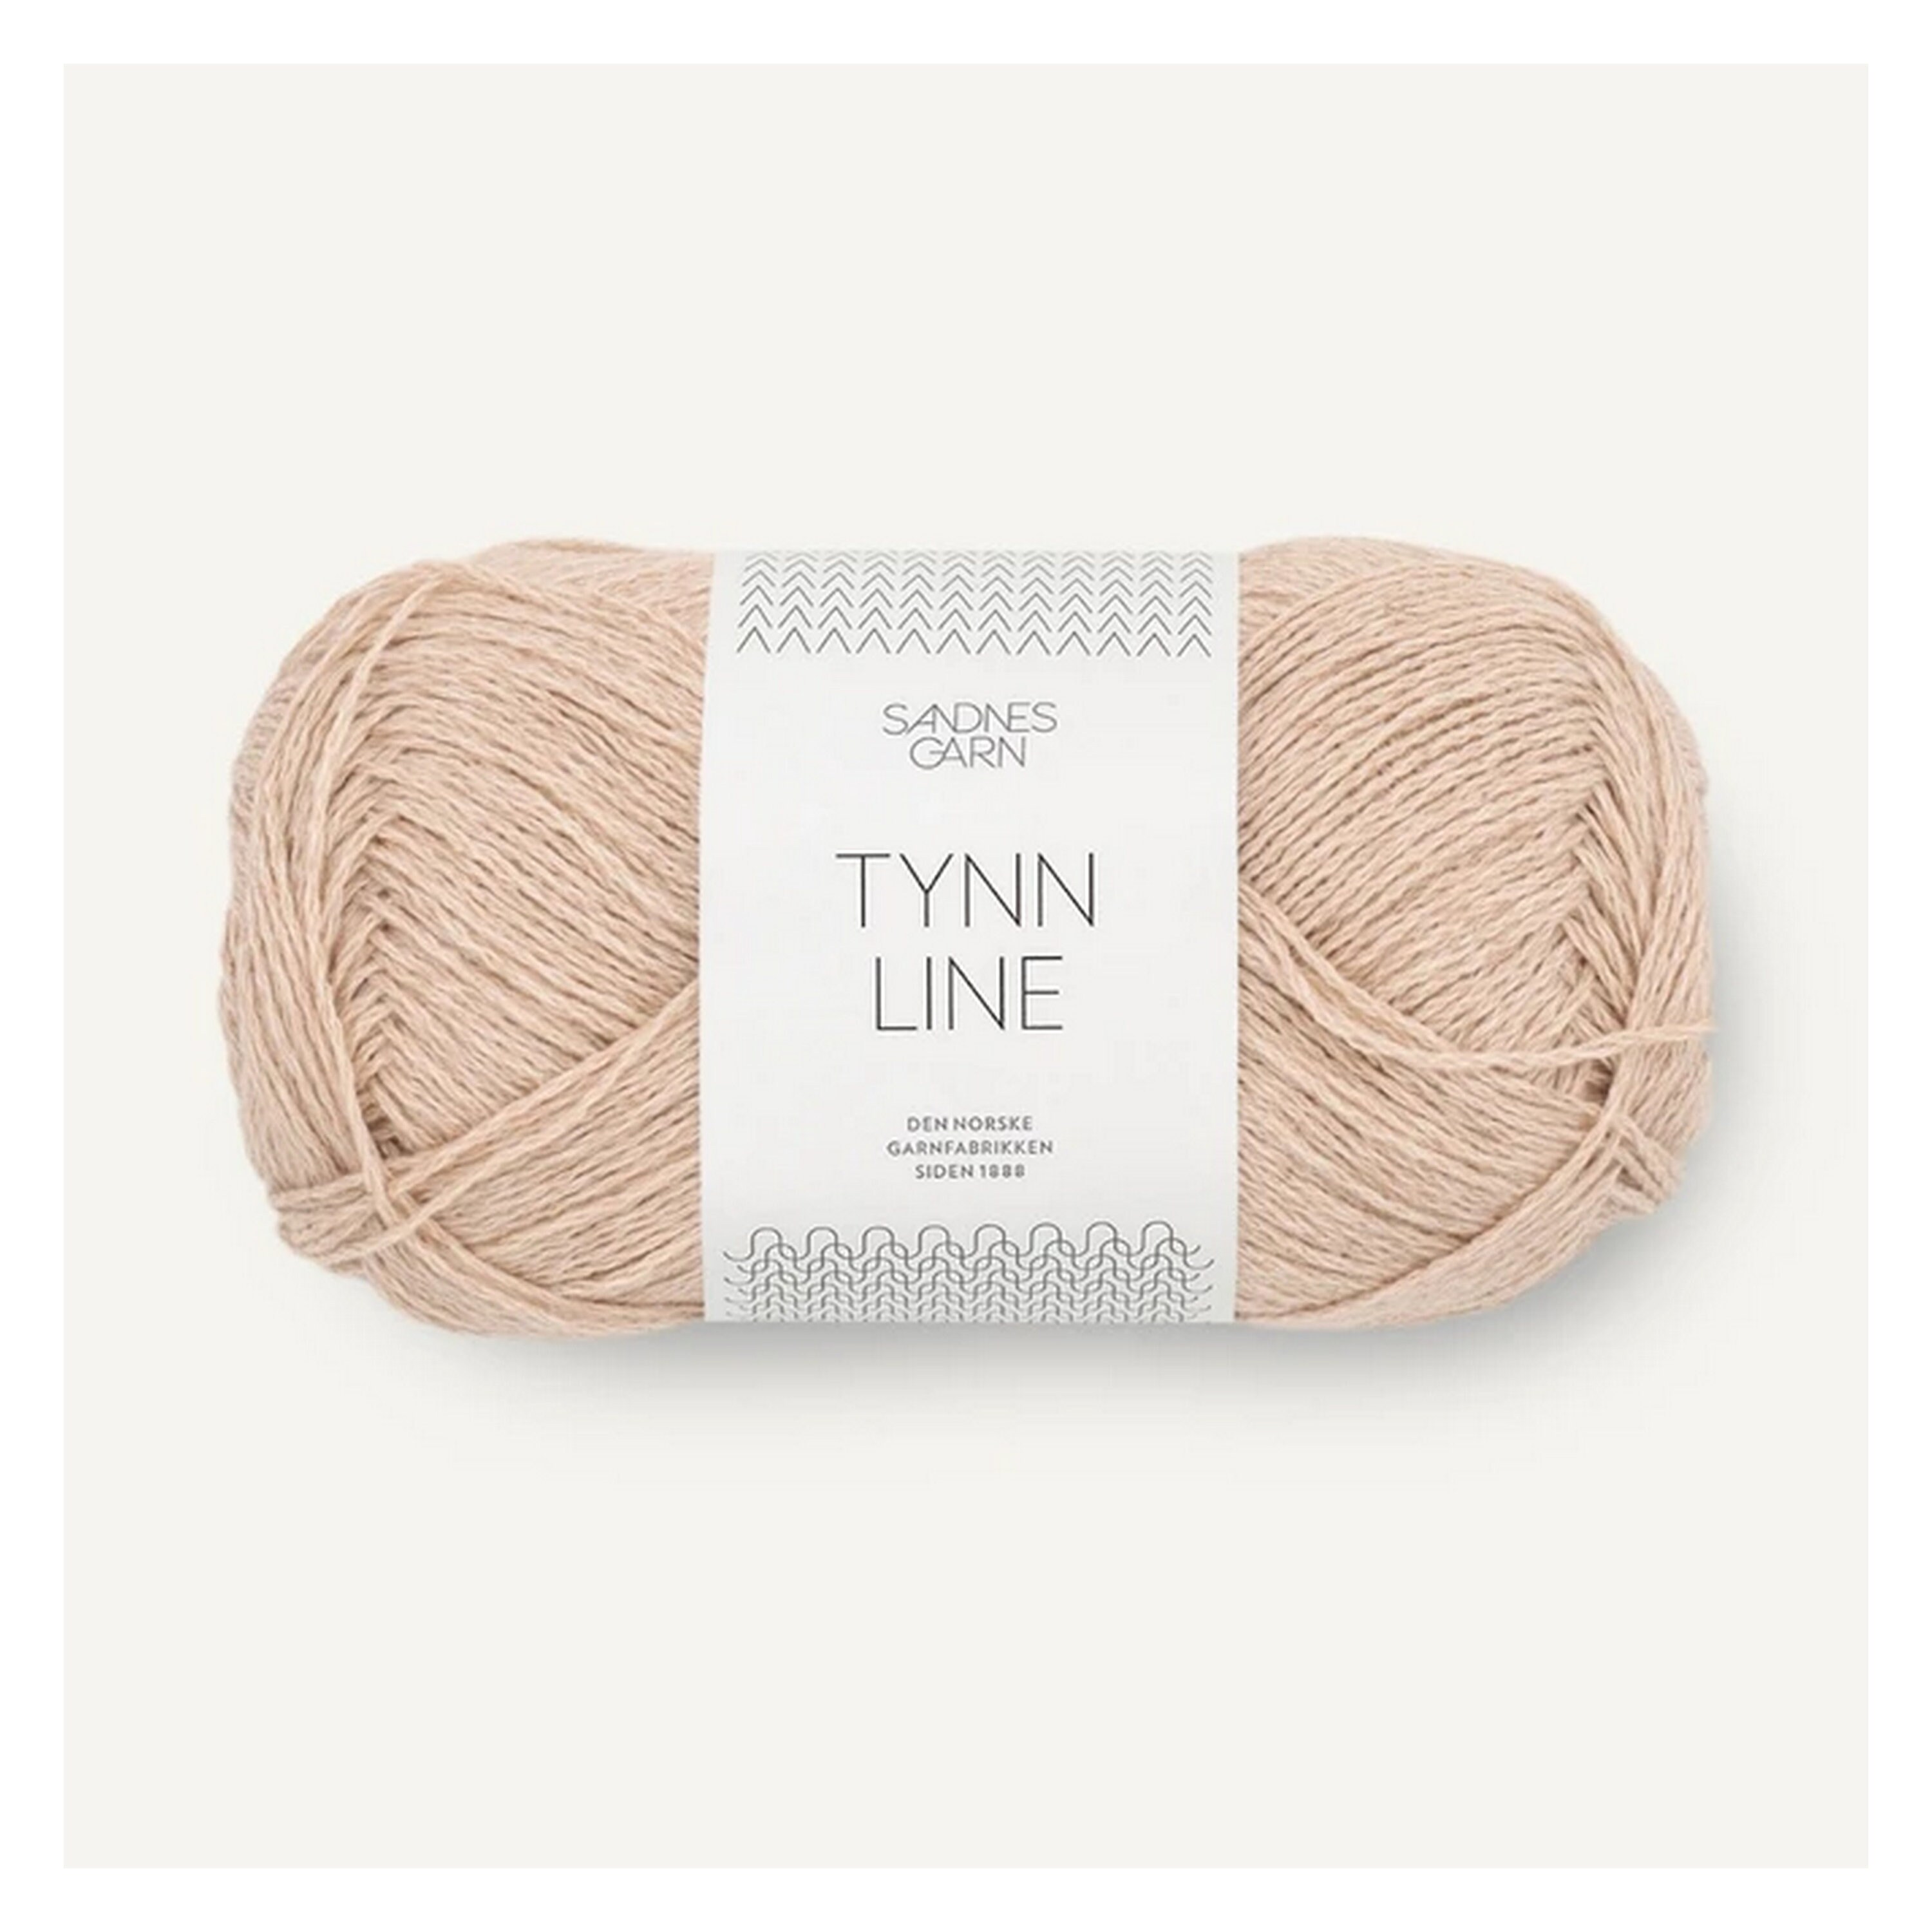 GARN Knitting Yarn Beautiful Norwegian - Etsy